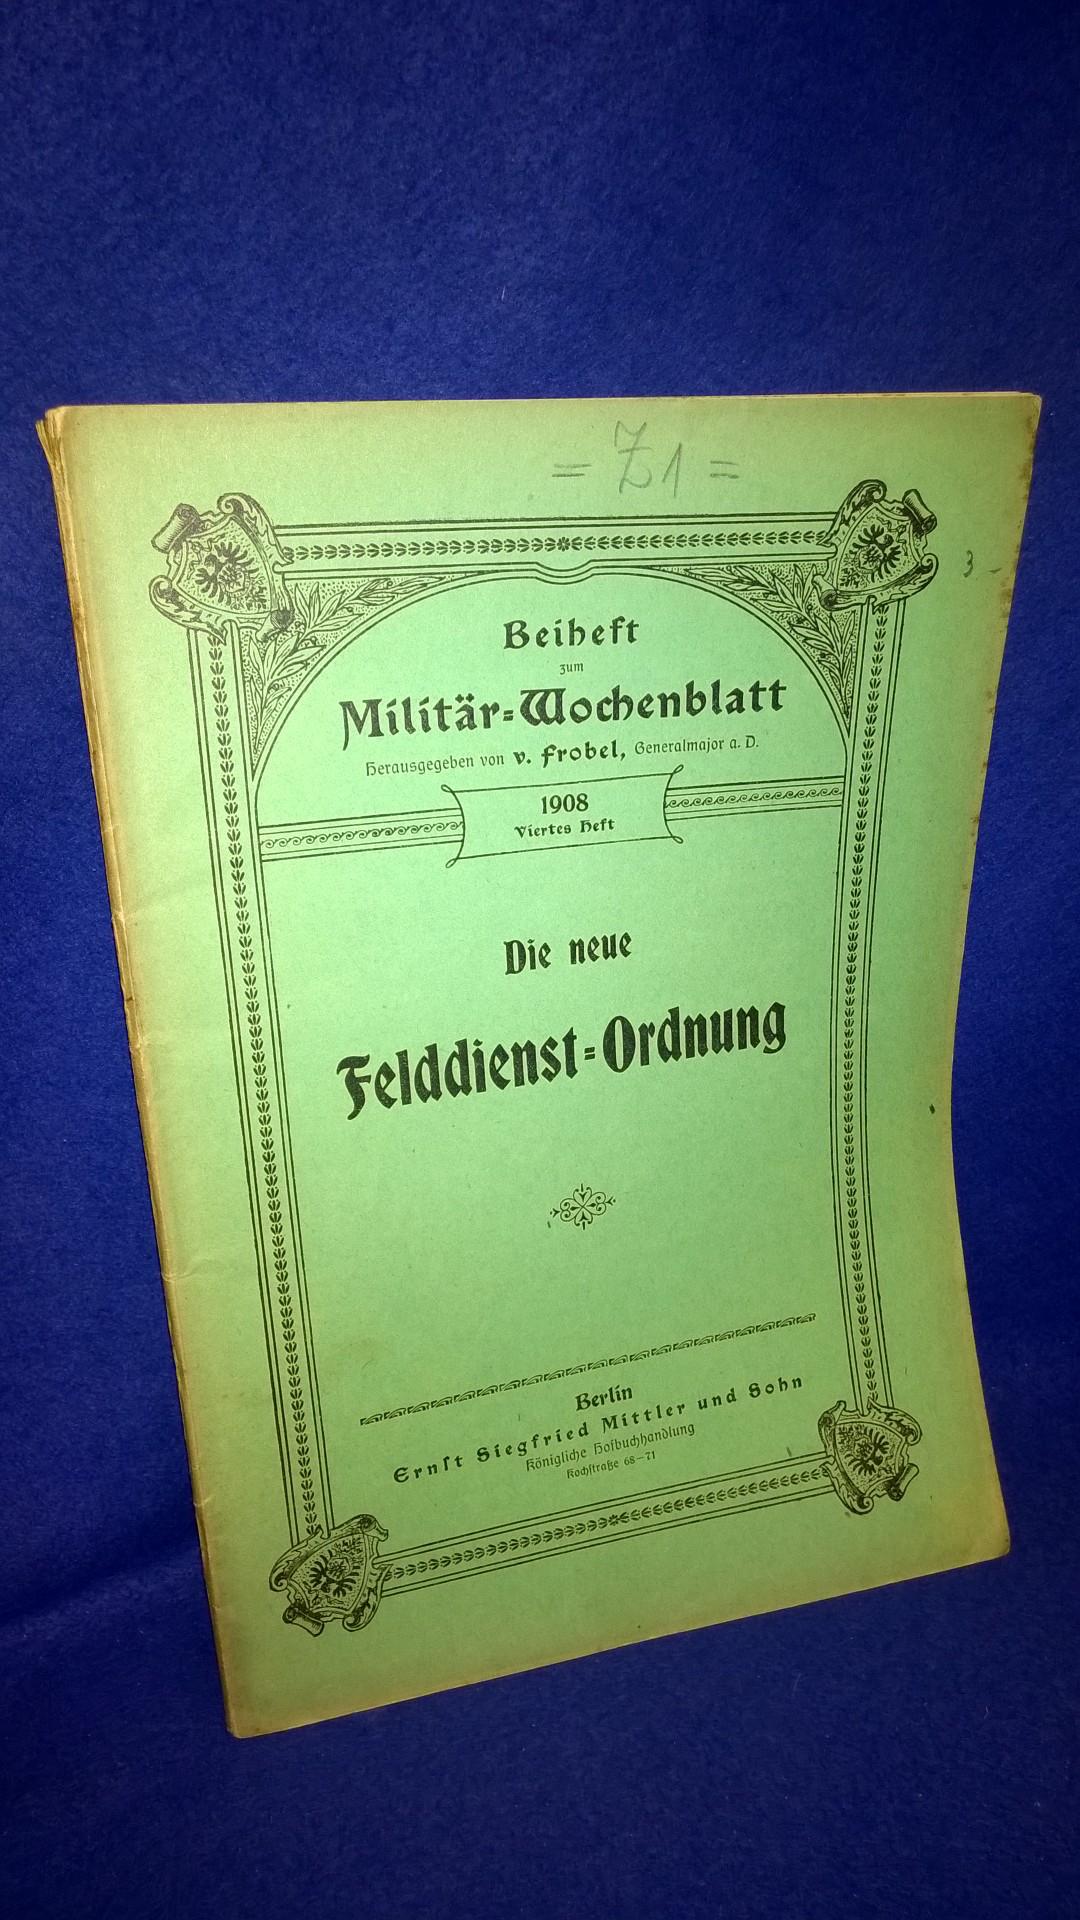 Beiheft zum Militär-Wochenblatt,1908,4.Heft: Die neue Felddienst-Ordnung 1908.